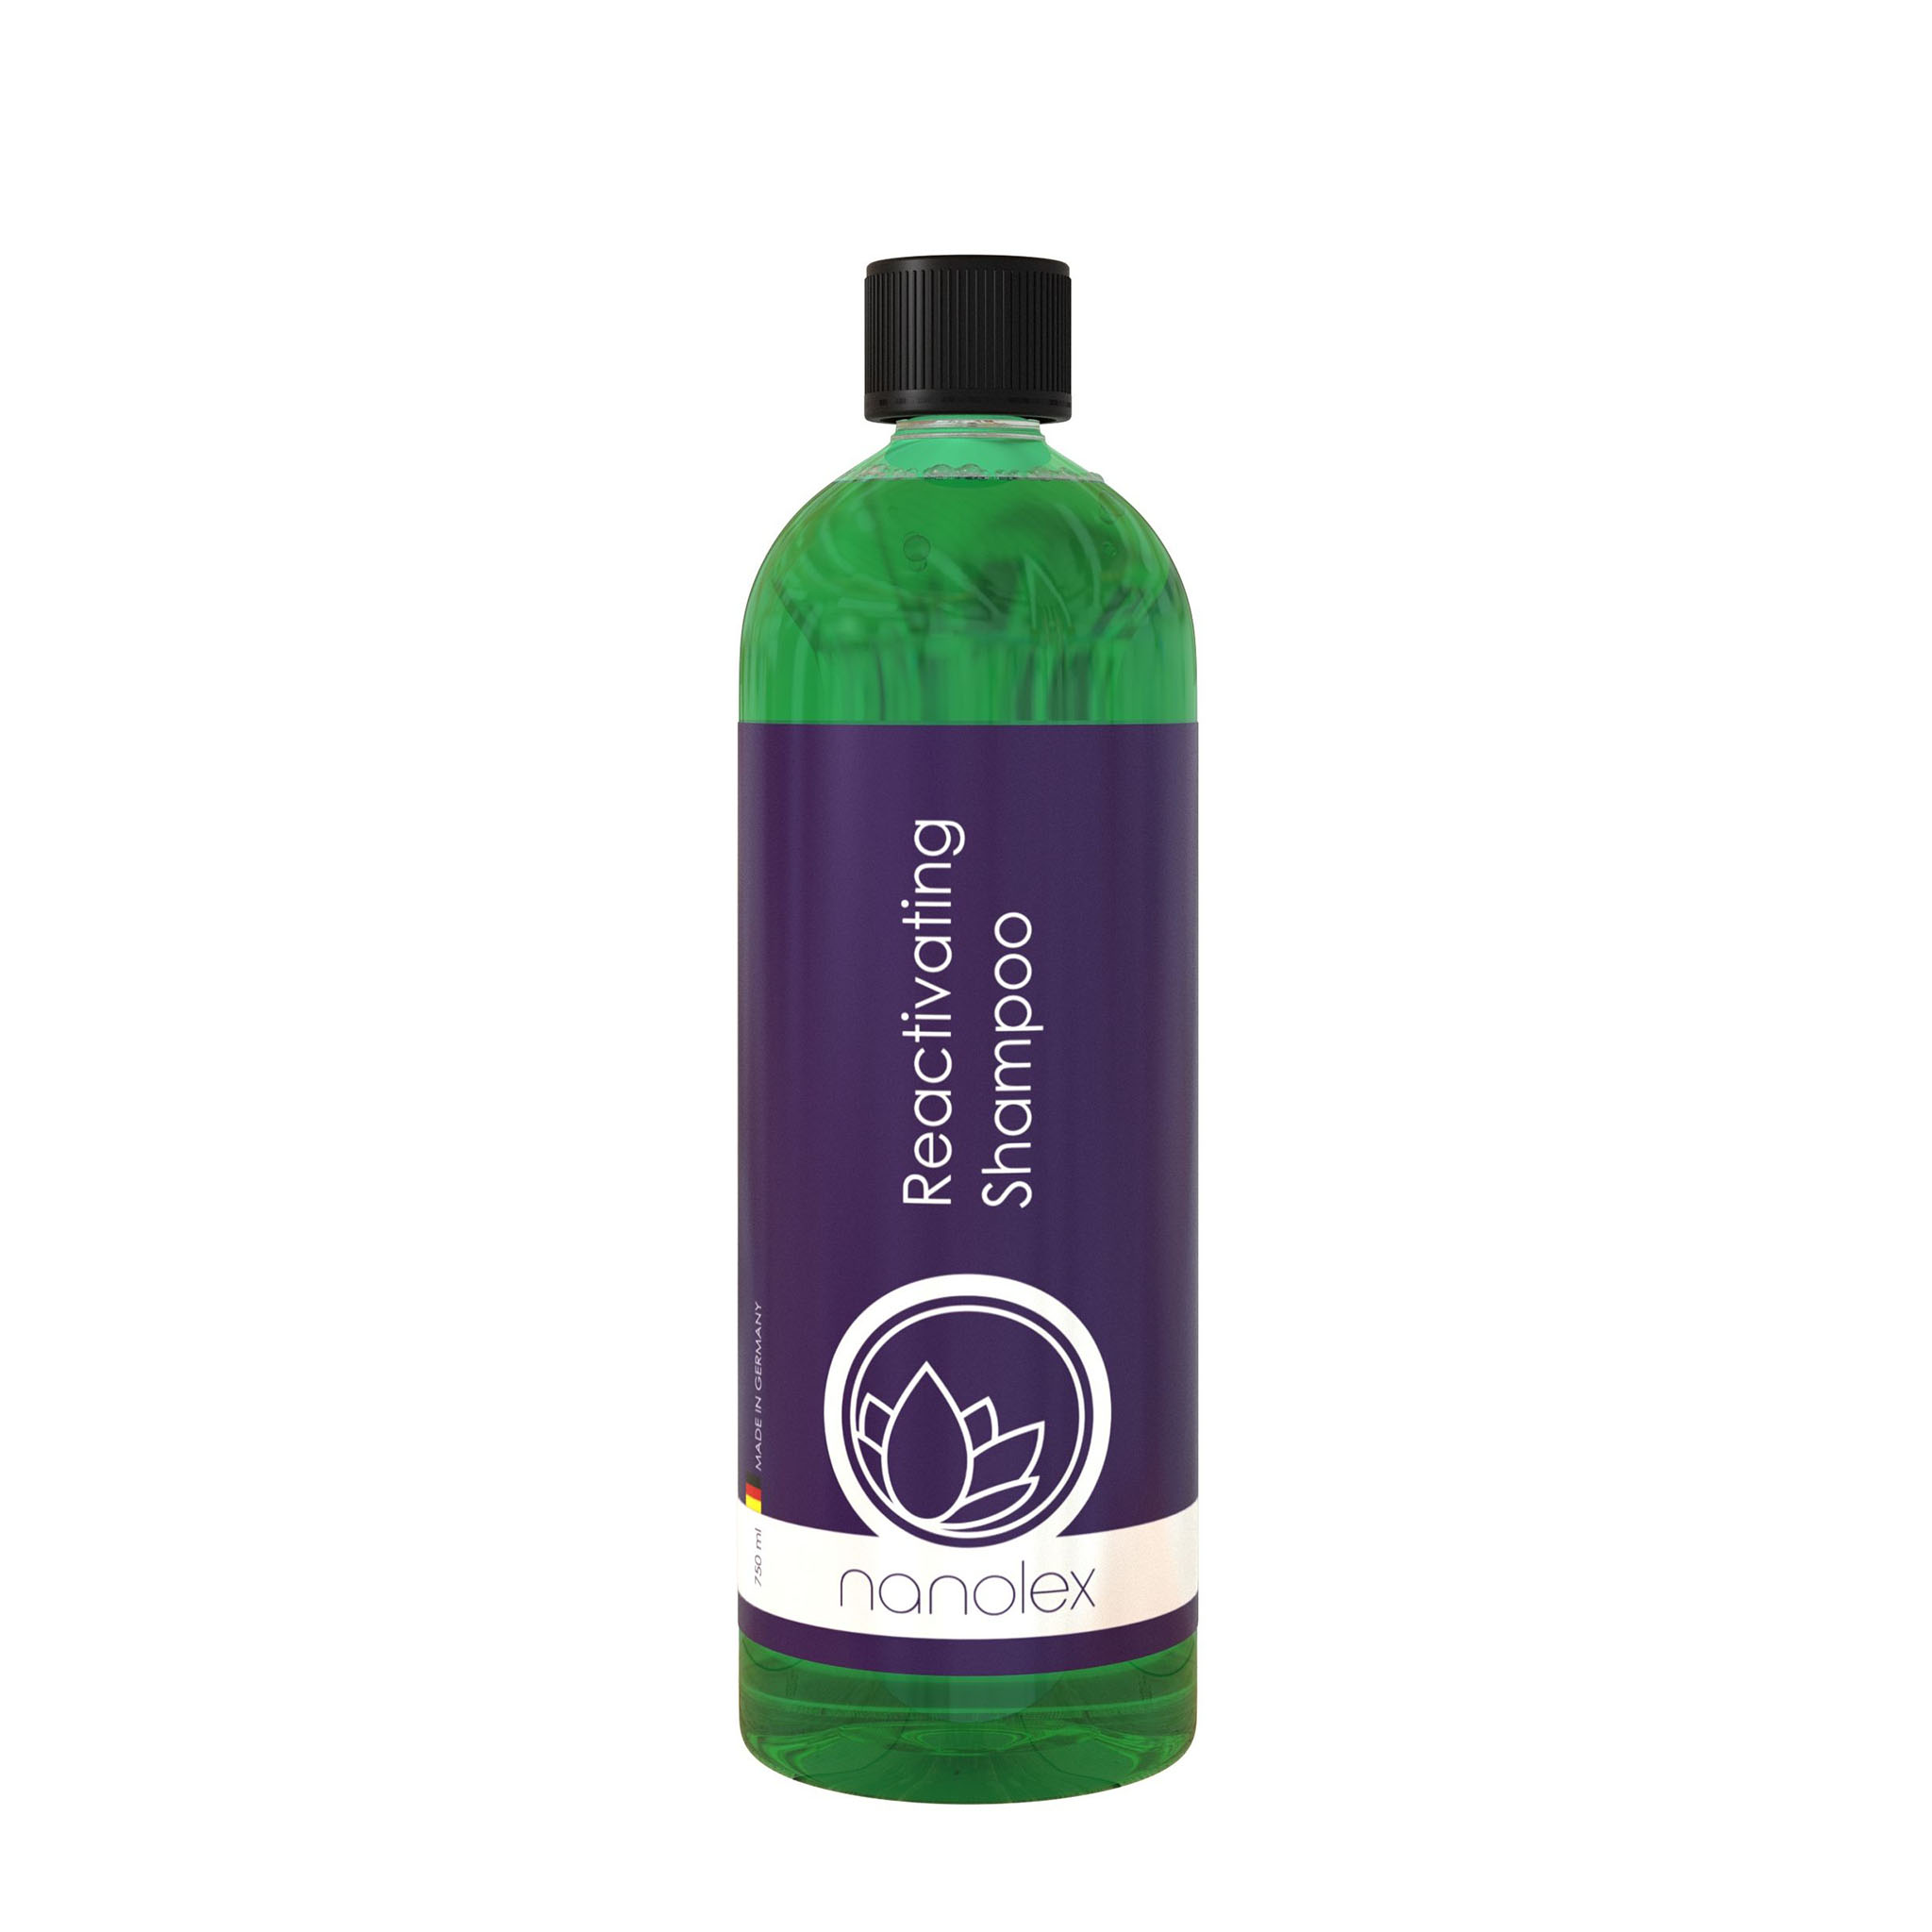 Bilschampo Nanolex Reactivating Shampoo, 750 ml